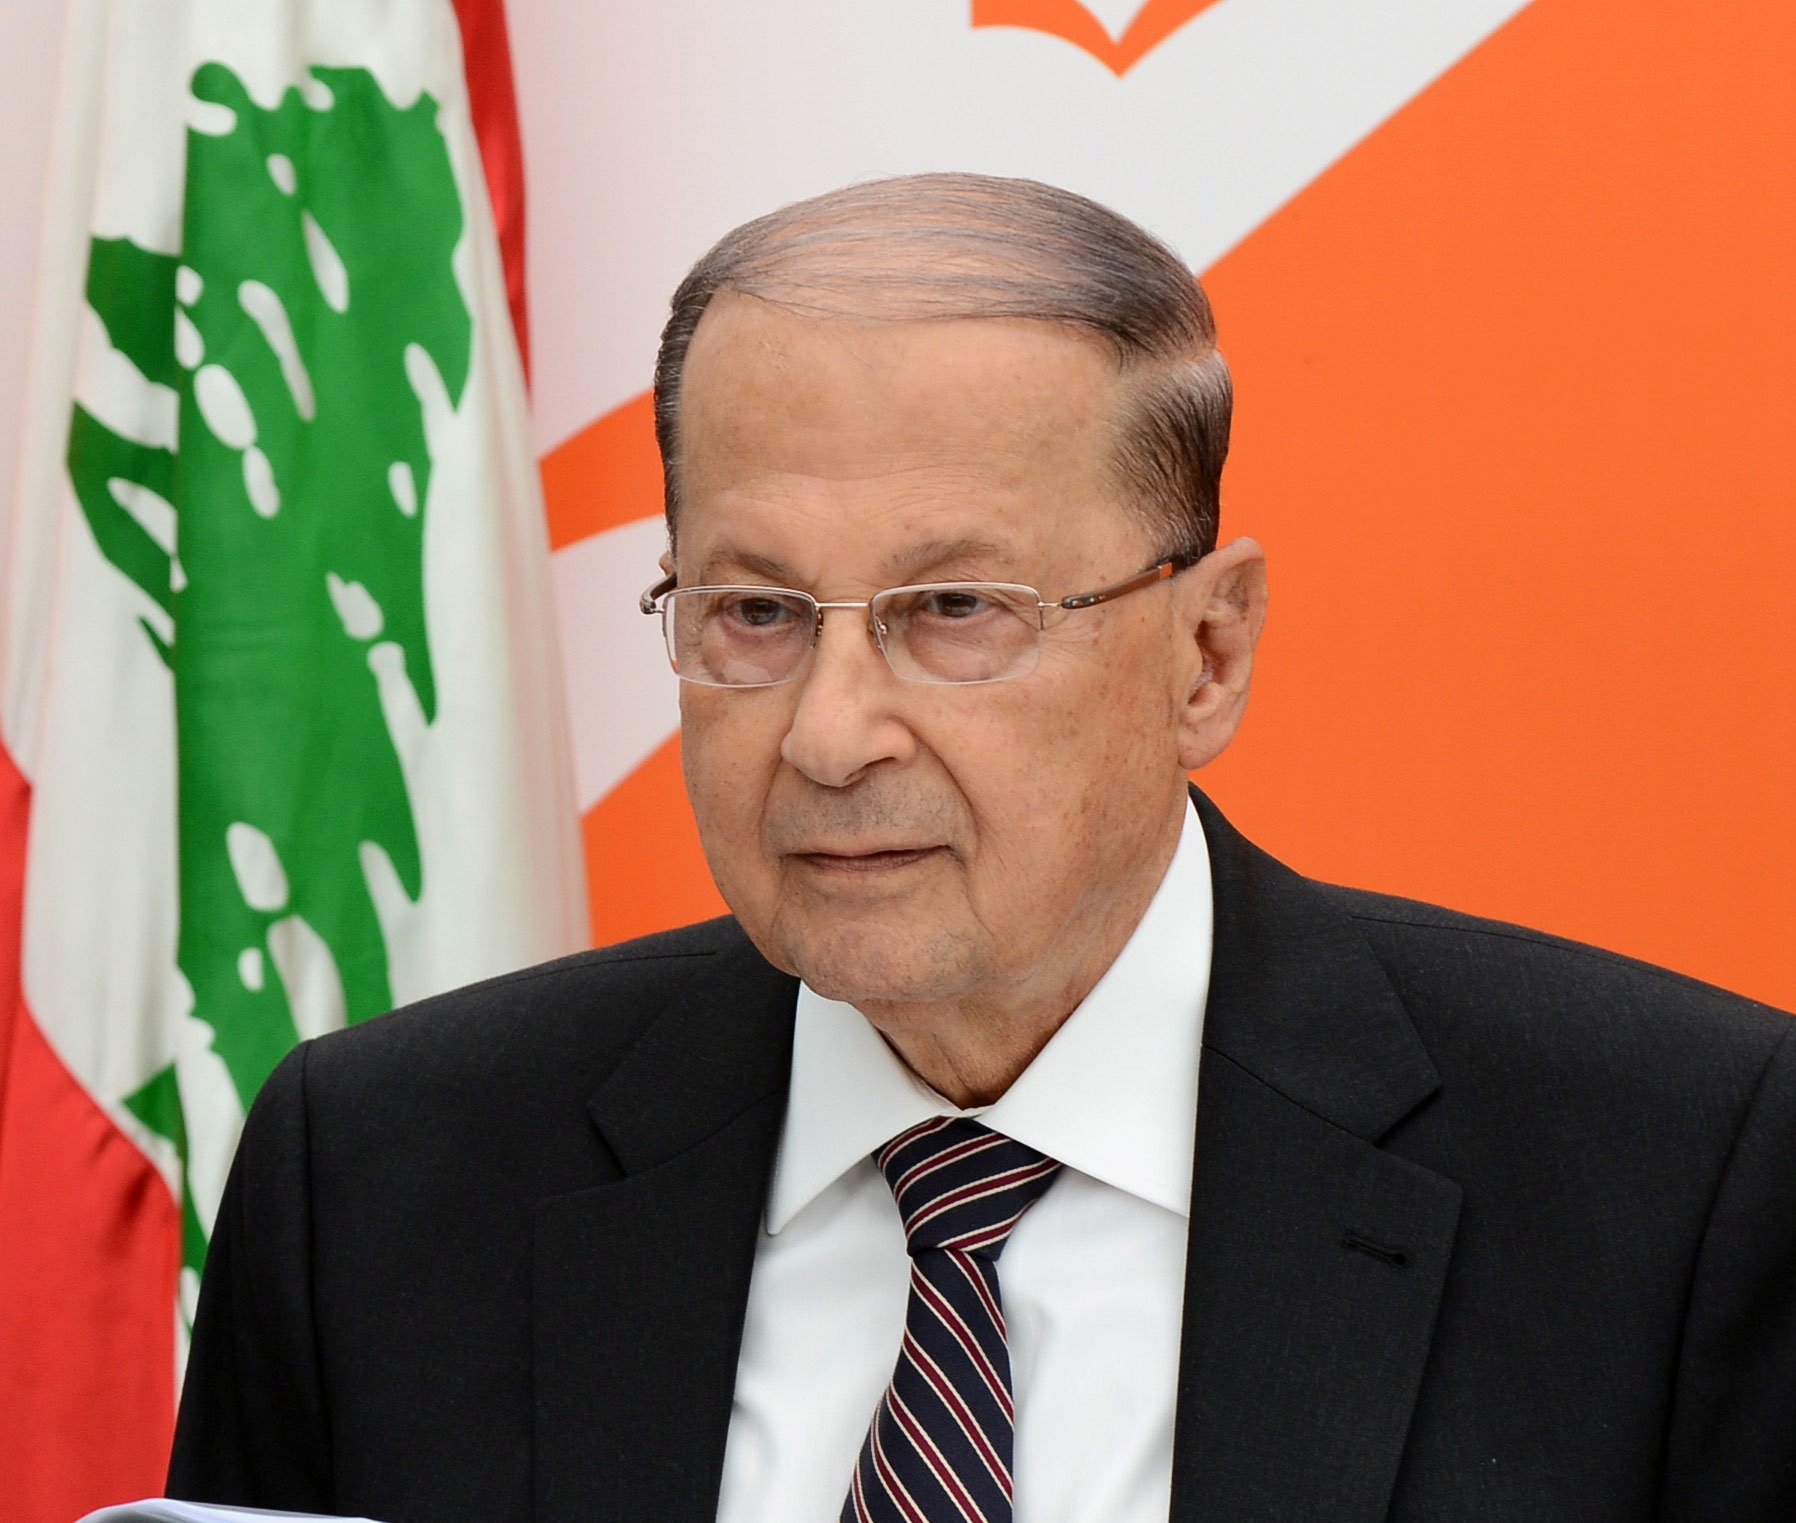  ژنرال میشل عون رئیس جمهوری لبنان شد